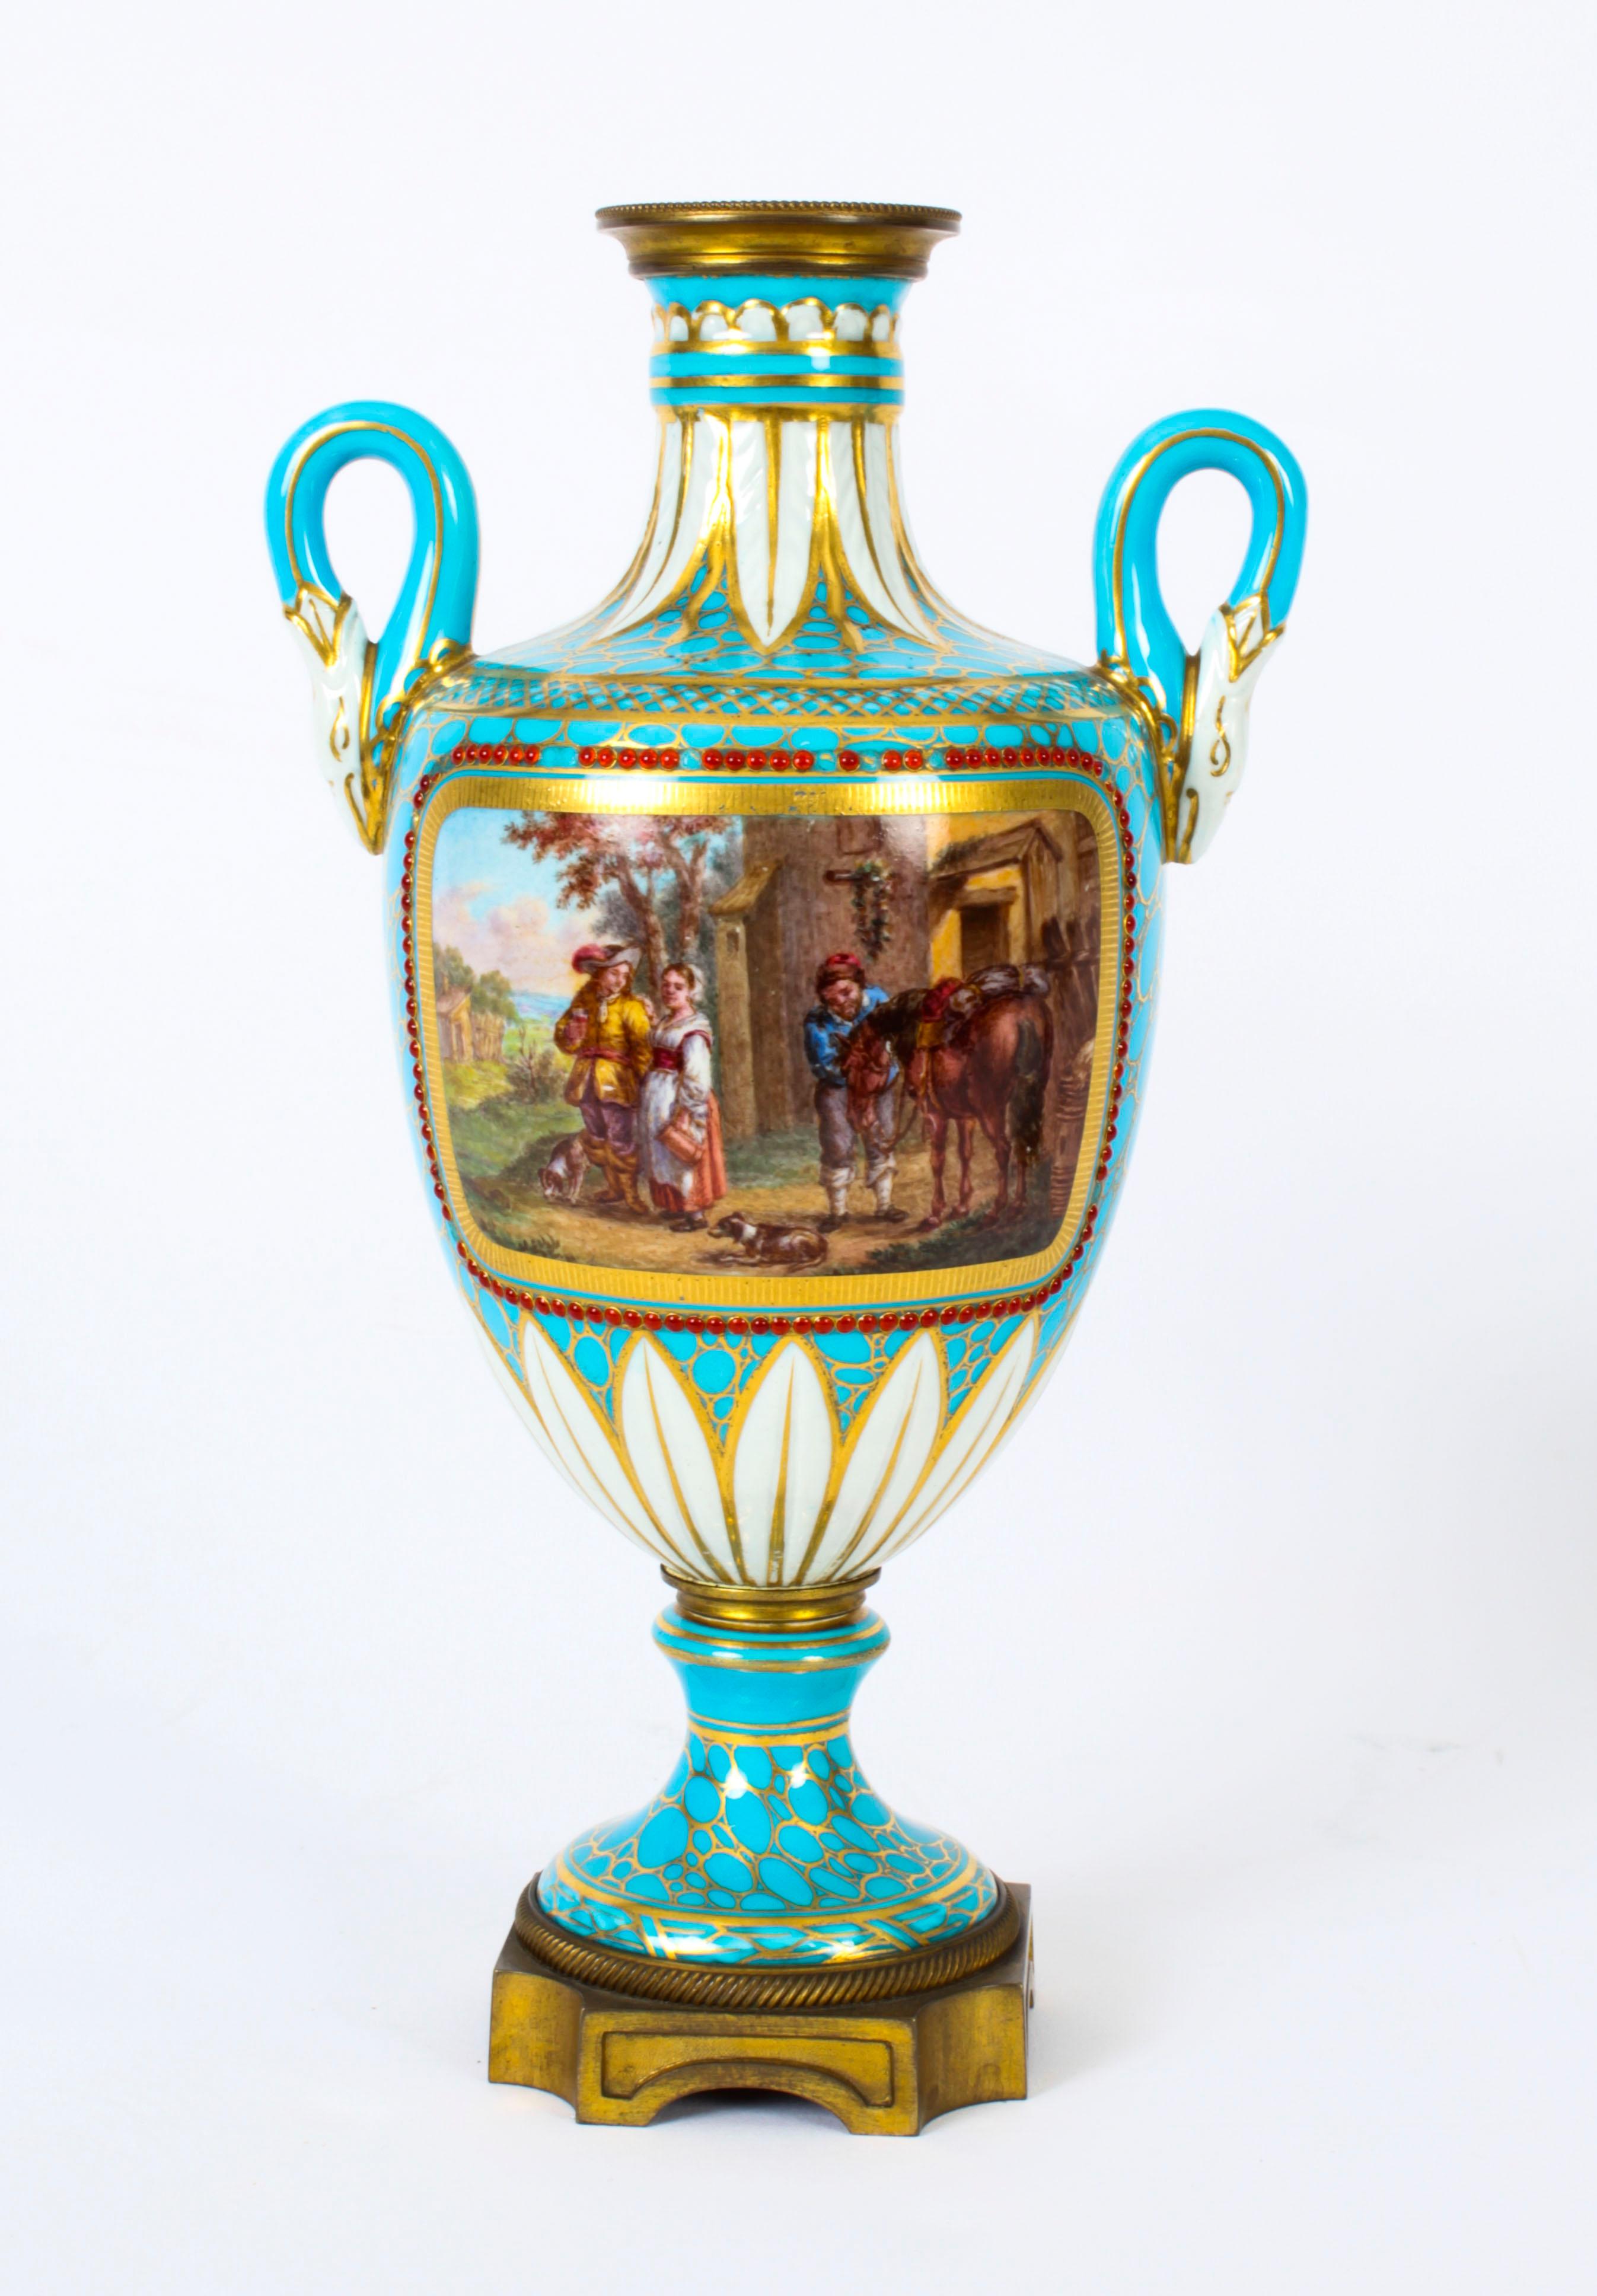 Dies ist eine feine und seltene antike Paar Französisch Porzellan Ormolu montiert Doppelgriff Urnen in der Sevres-Art, aus der Zeit um 1860.
 
Die dekorativen Vasen mit zwei Henkeln sind auf der einen Seite mit hochwertigen handgemalten Tafeln mit